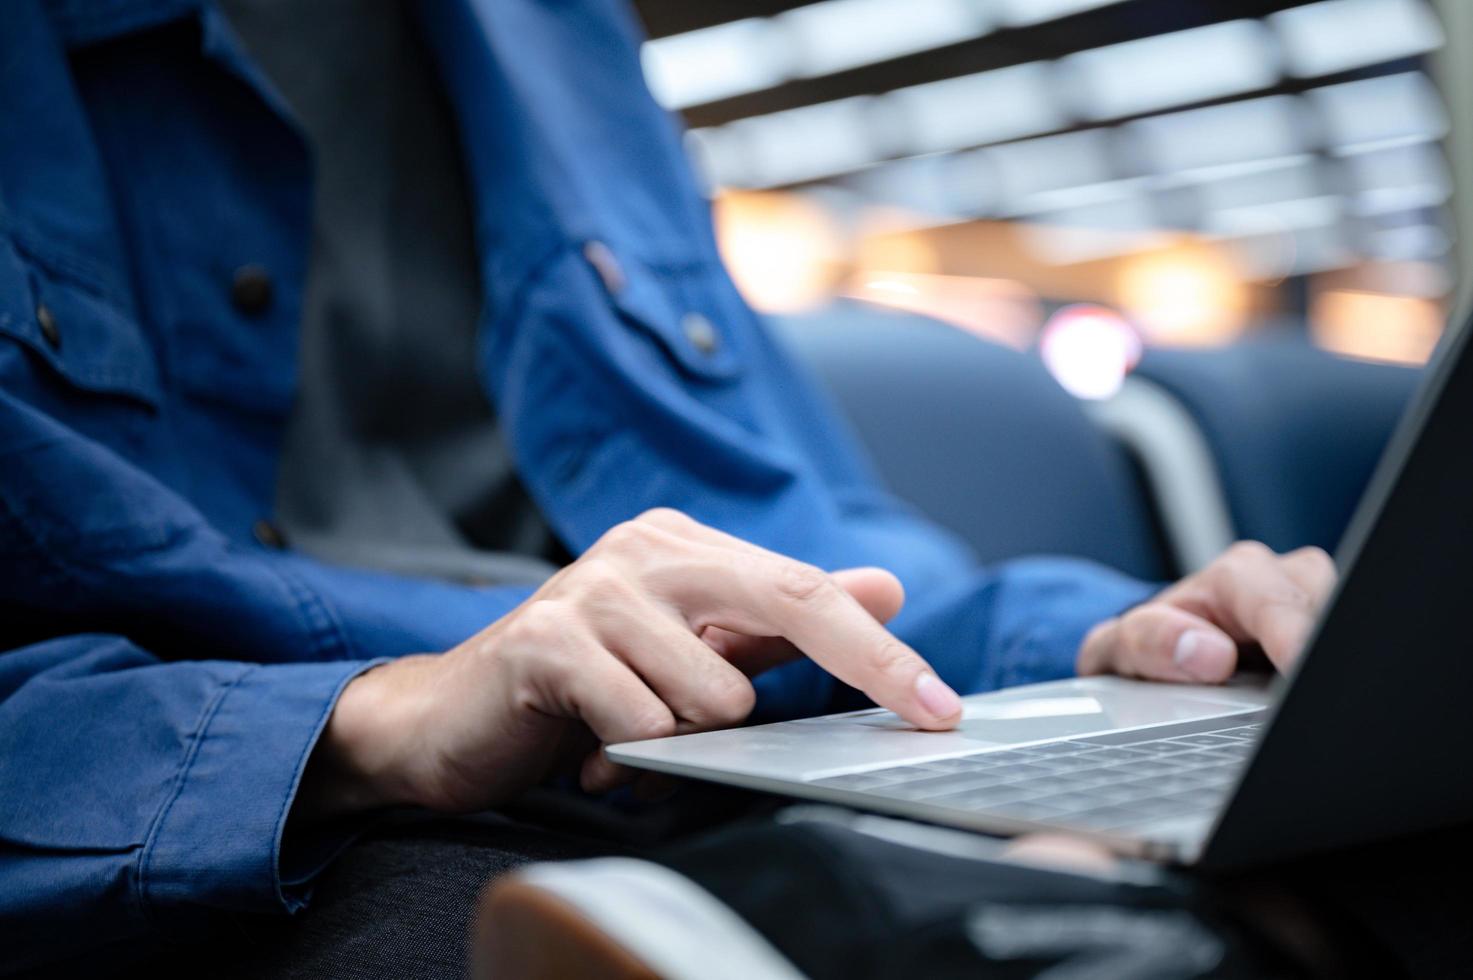 Geschäftsmann, der sitzt und einen Laptop verwendet, um am Flughafen zu arbeiten, junge Person, die reist, reist und Internet-Kommunikationstechnologie für die Arbeit hat, wenn sie drinnen an einem Flughafen auf Abflug wartet foto